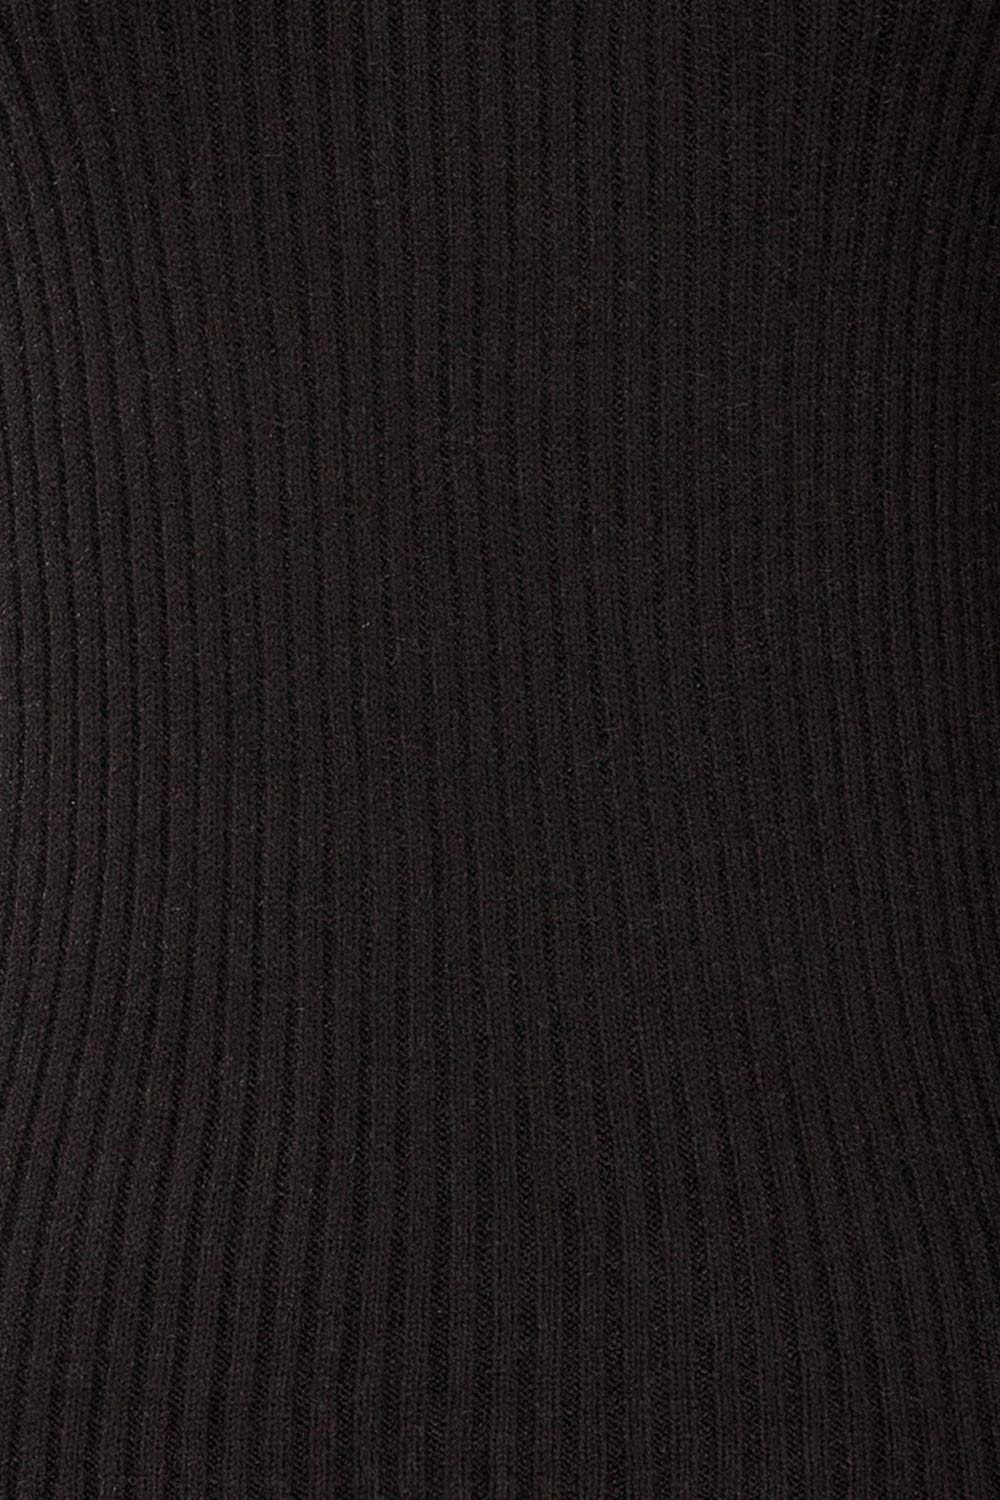 Karsava Black Puffy Sleeve Turtleneck Sweater | La petite garçonne fabric 